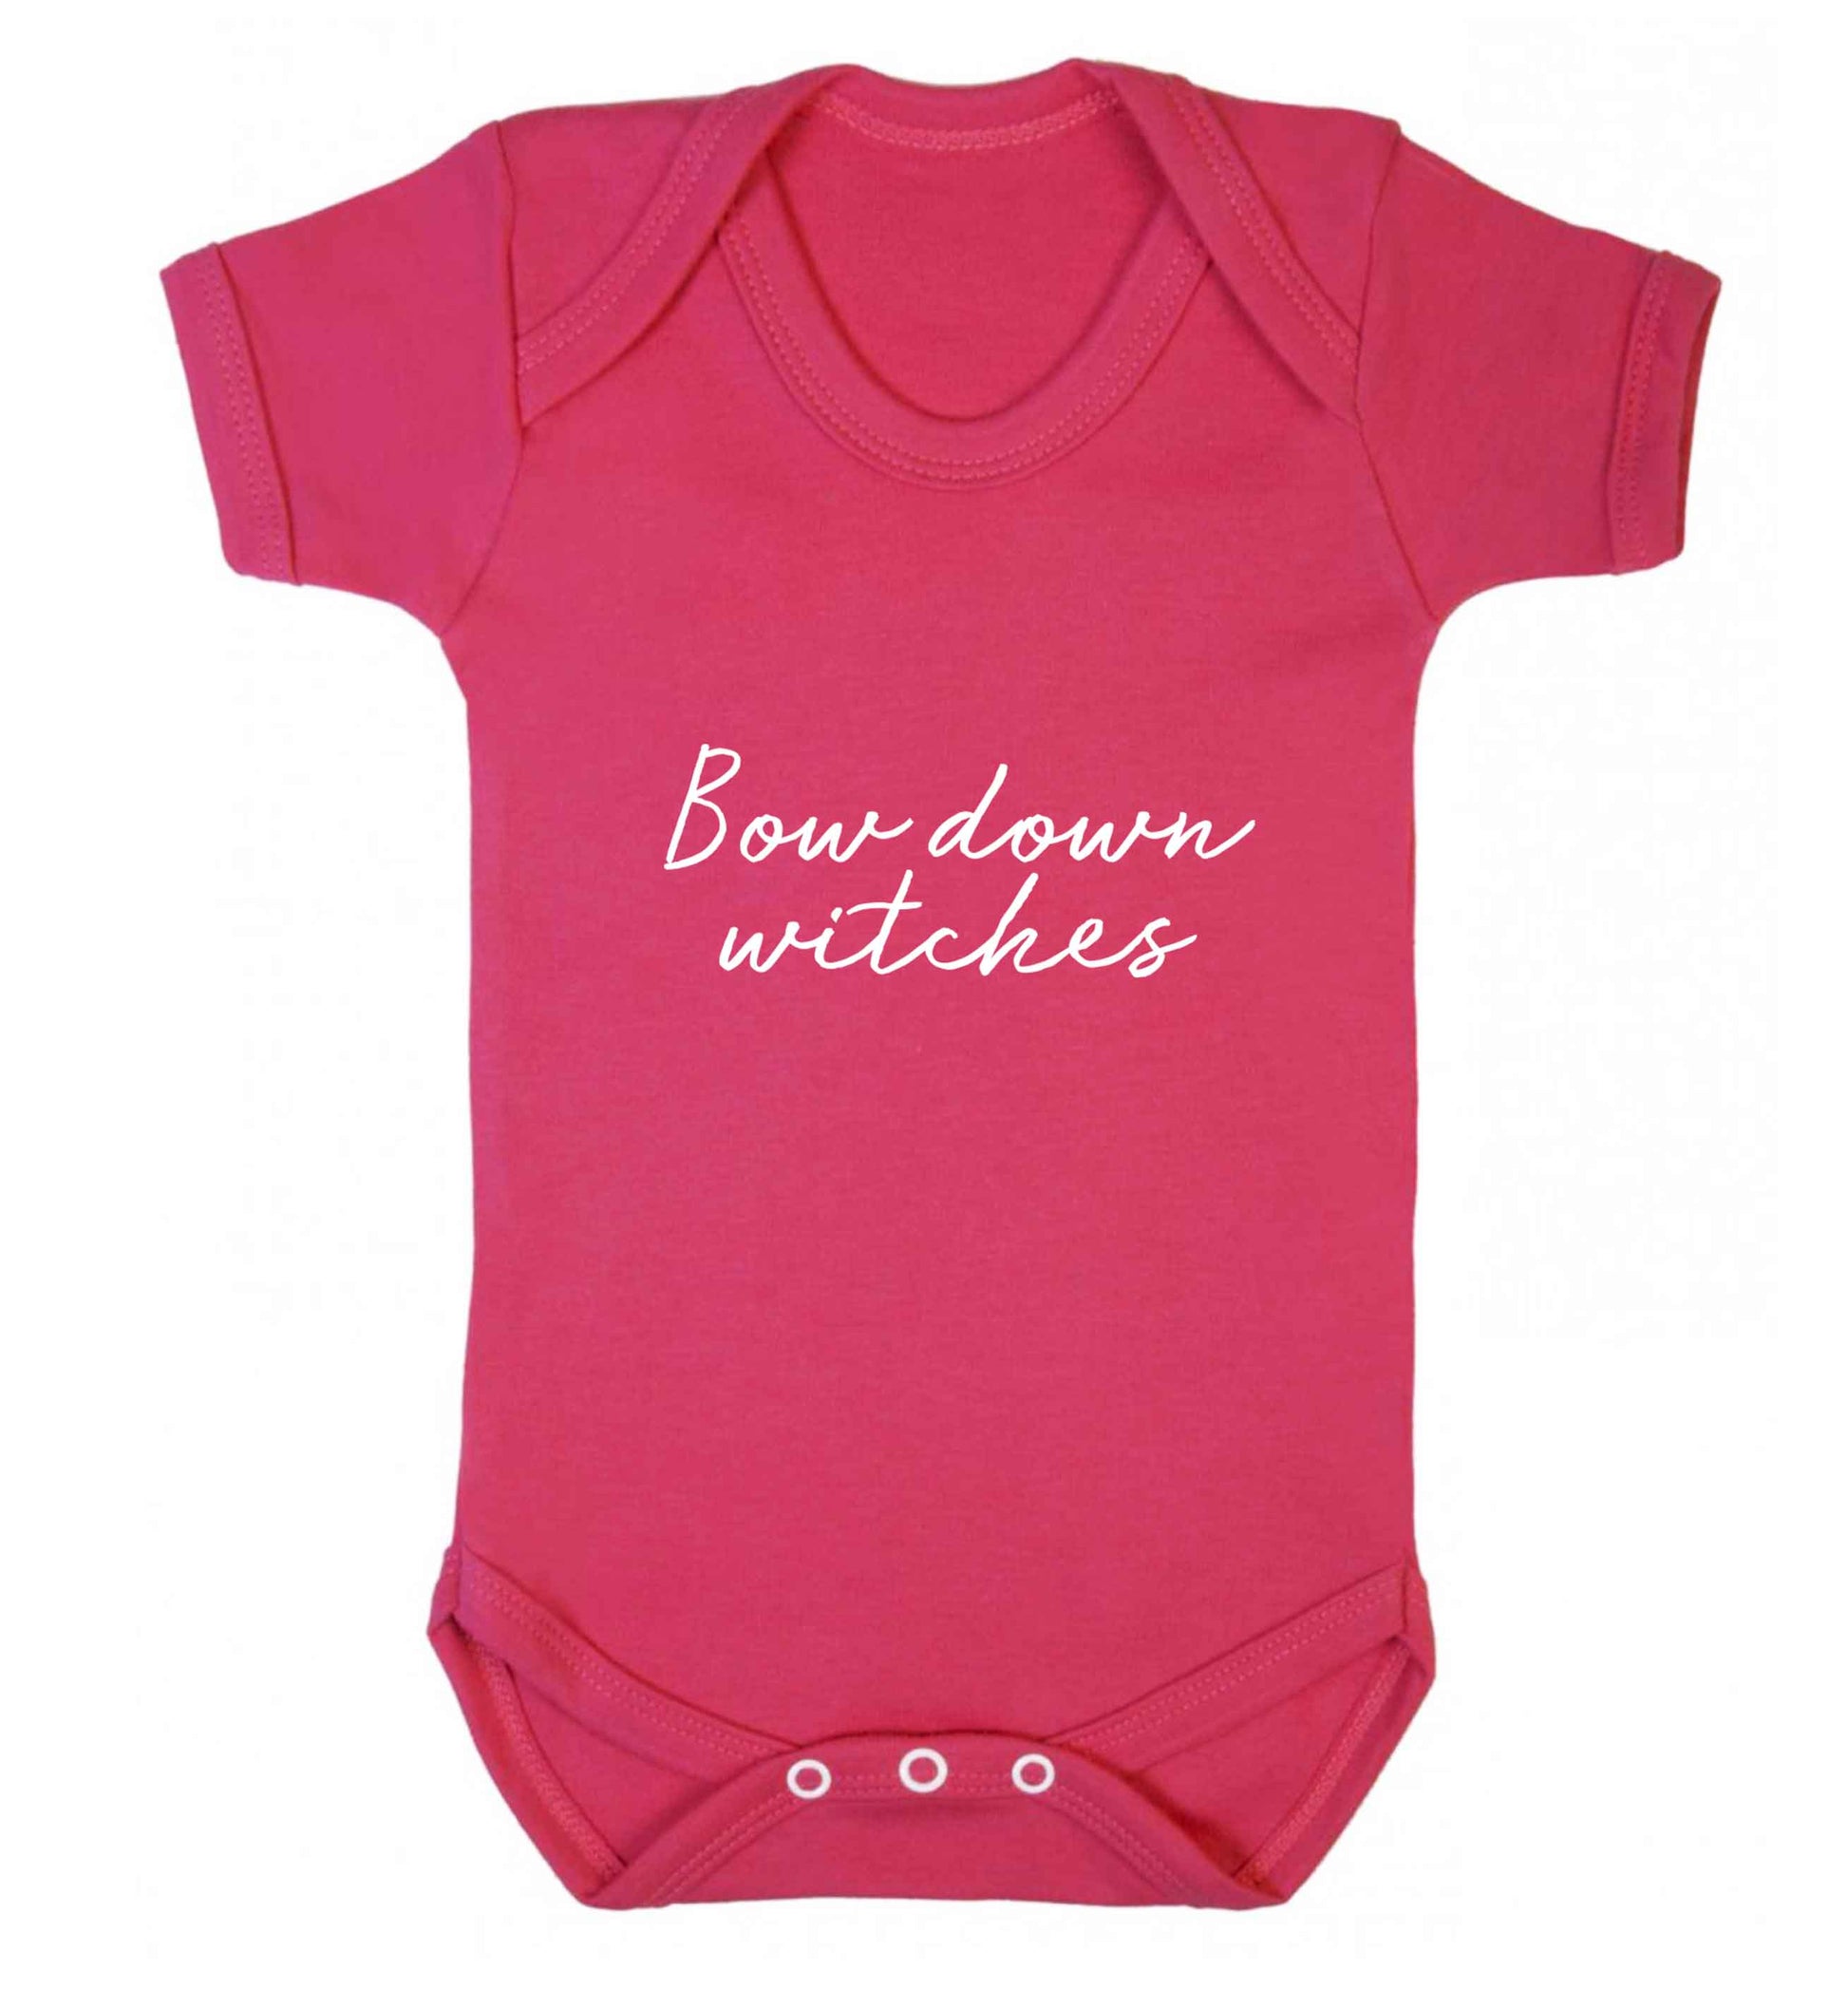 Bow down witches baby vest dark pink 18-24 months